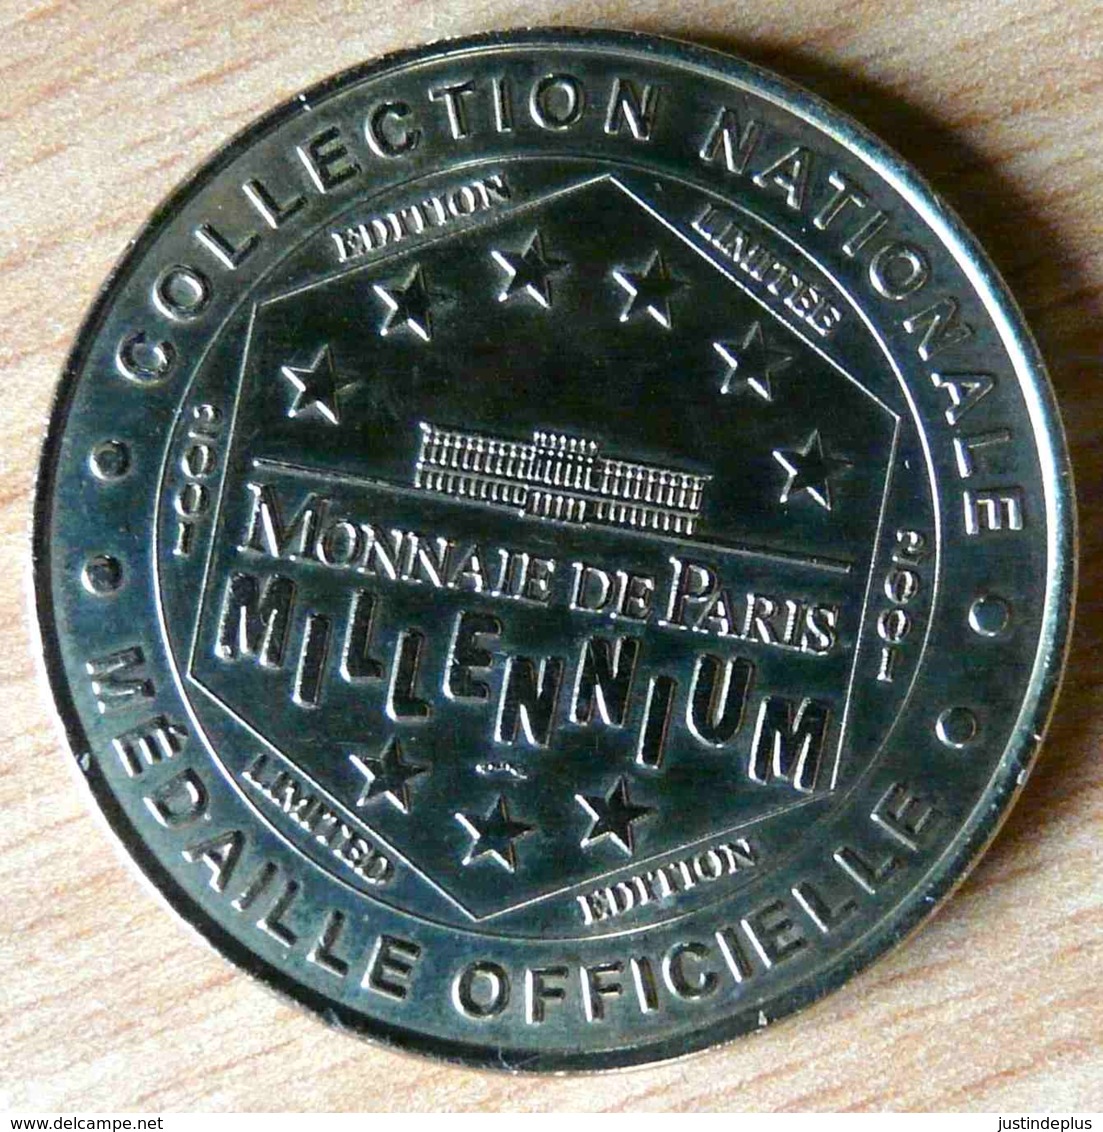 CHATEAU D'ANGERS MILLENIUM 2001 MONNAIE DE PARIS COLLECTION NATIONALE MEDAILLE OFFICIELLE JETON TOURISTIQUE - 2001